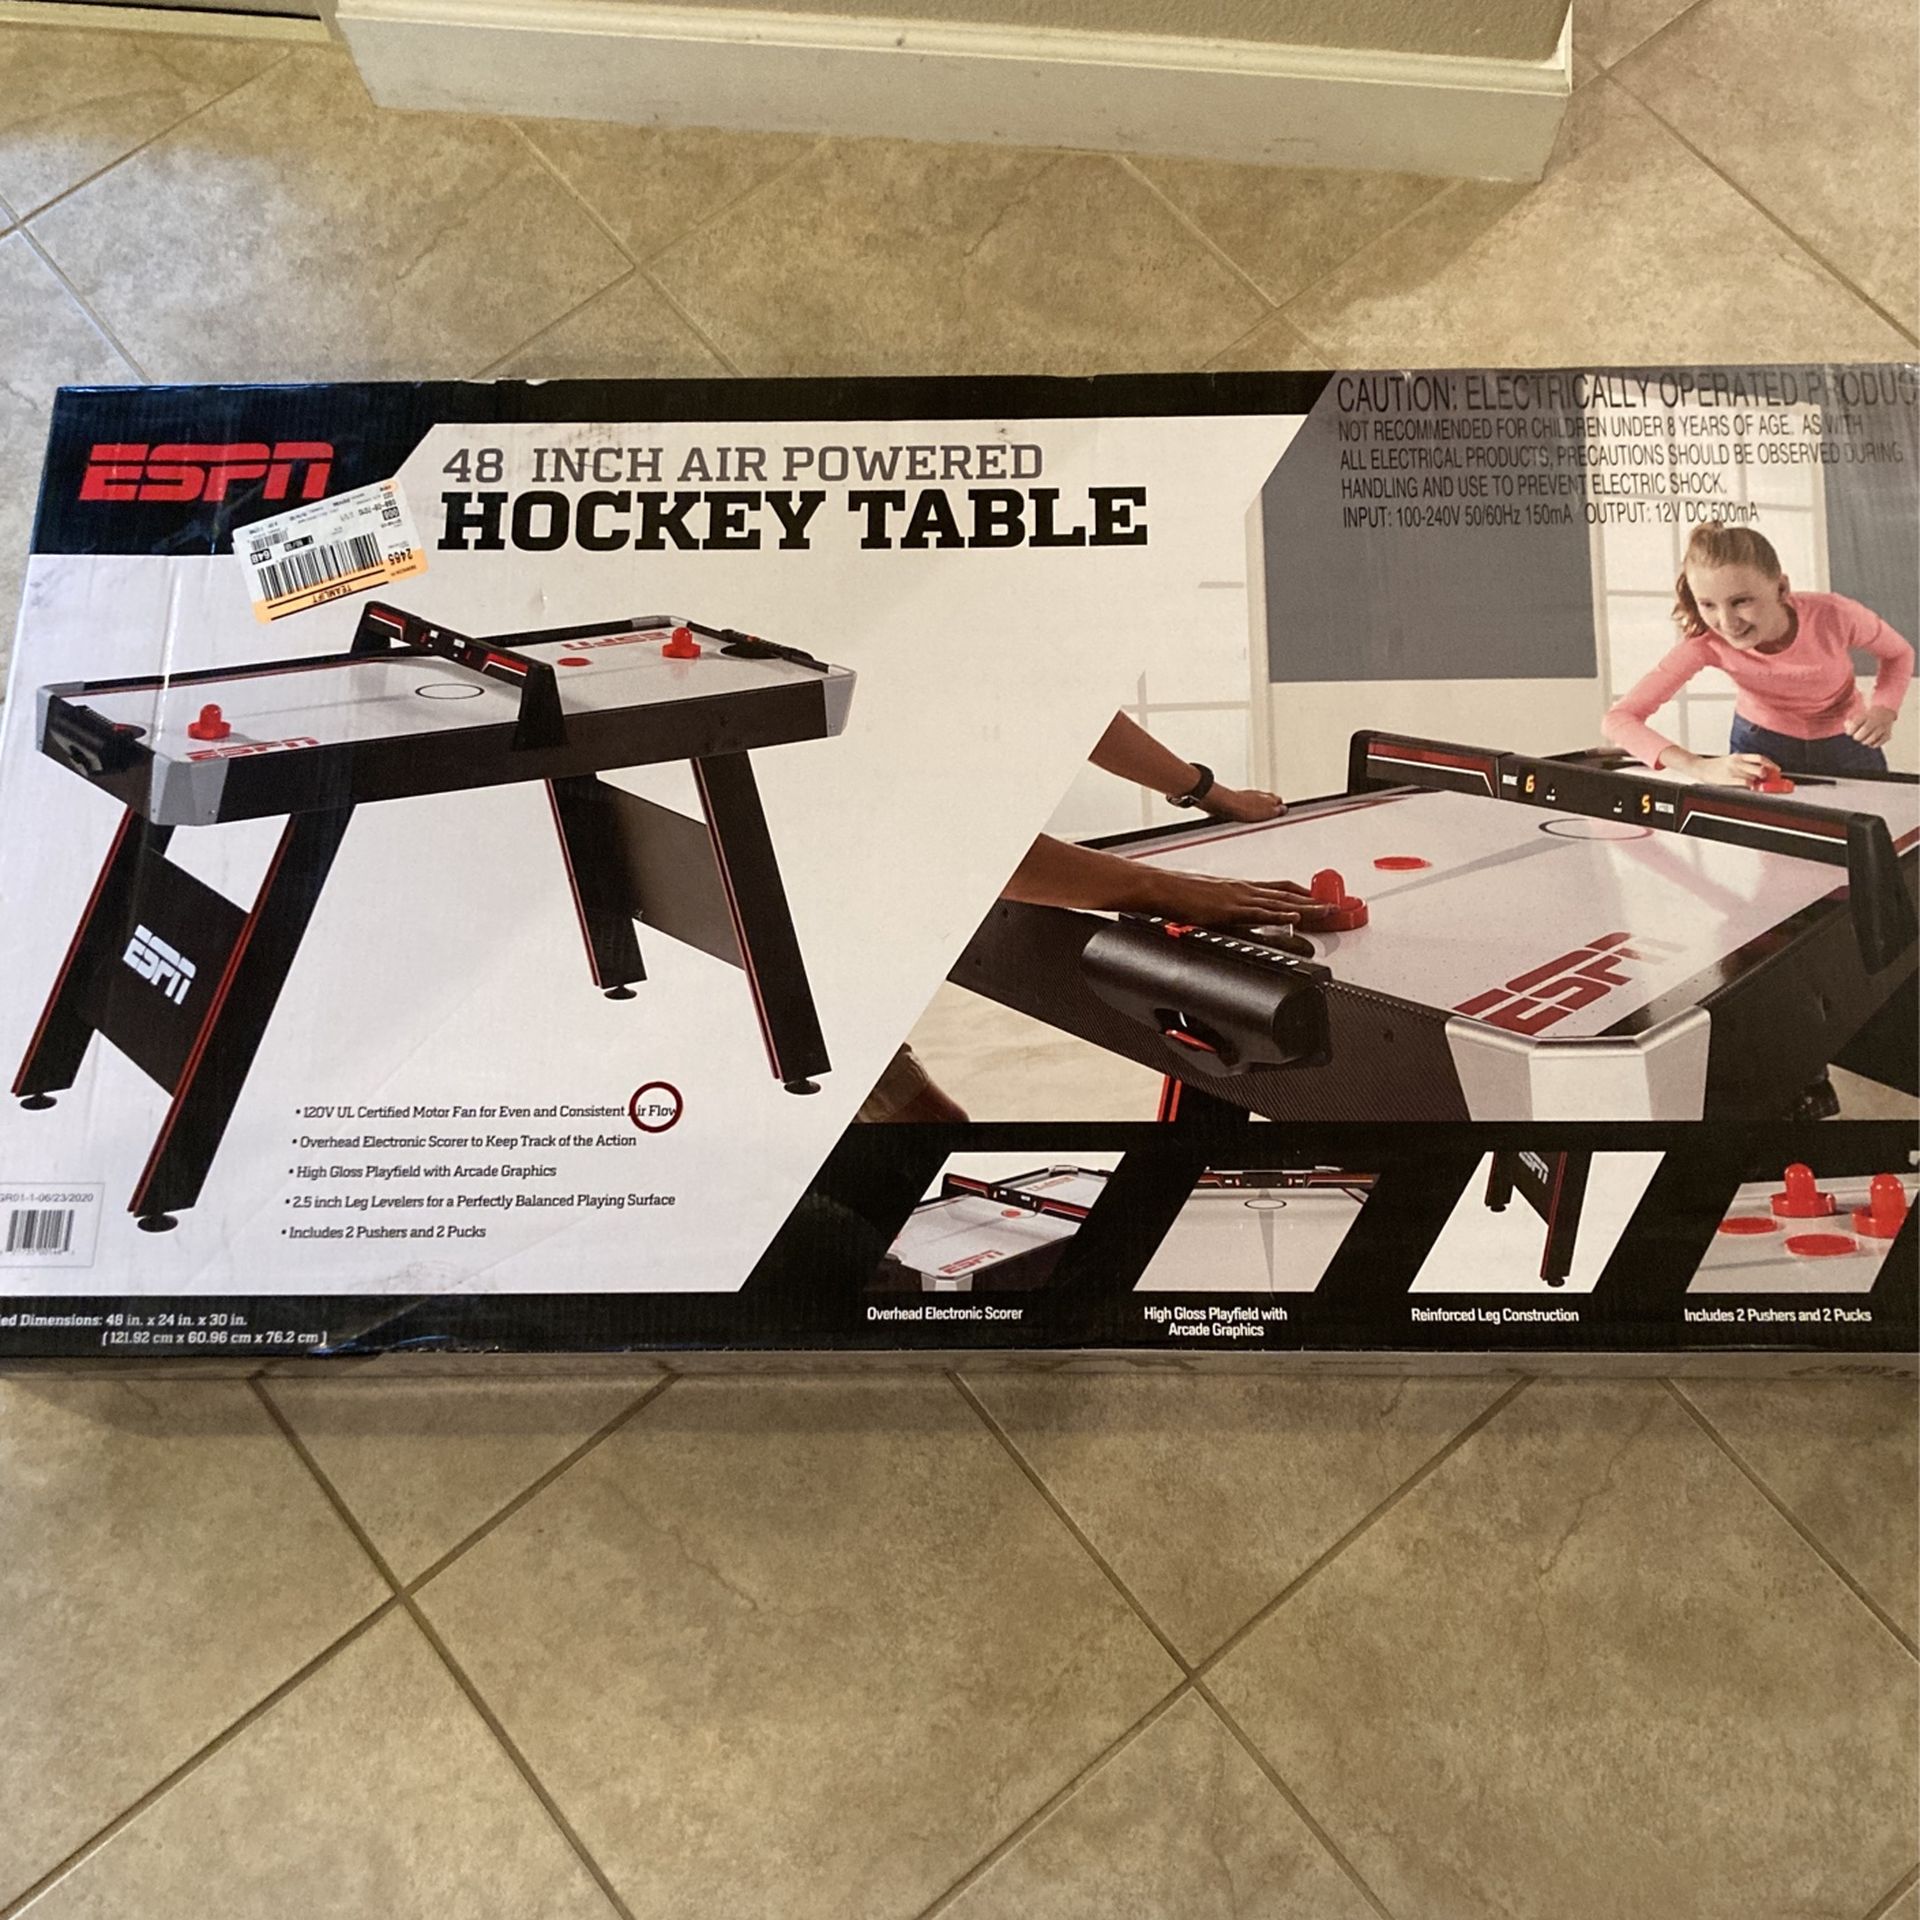 ESPN 48 Inch Air Powered Hockey Table